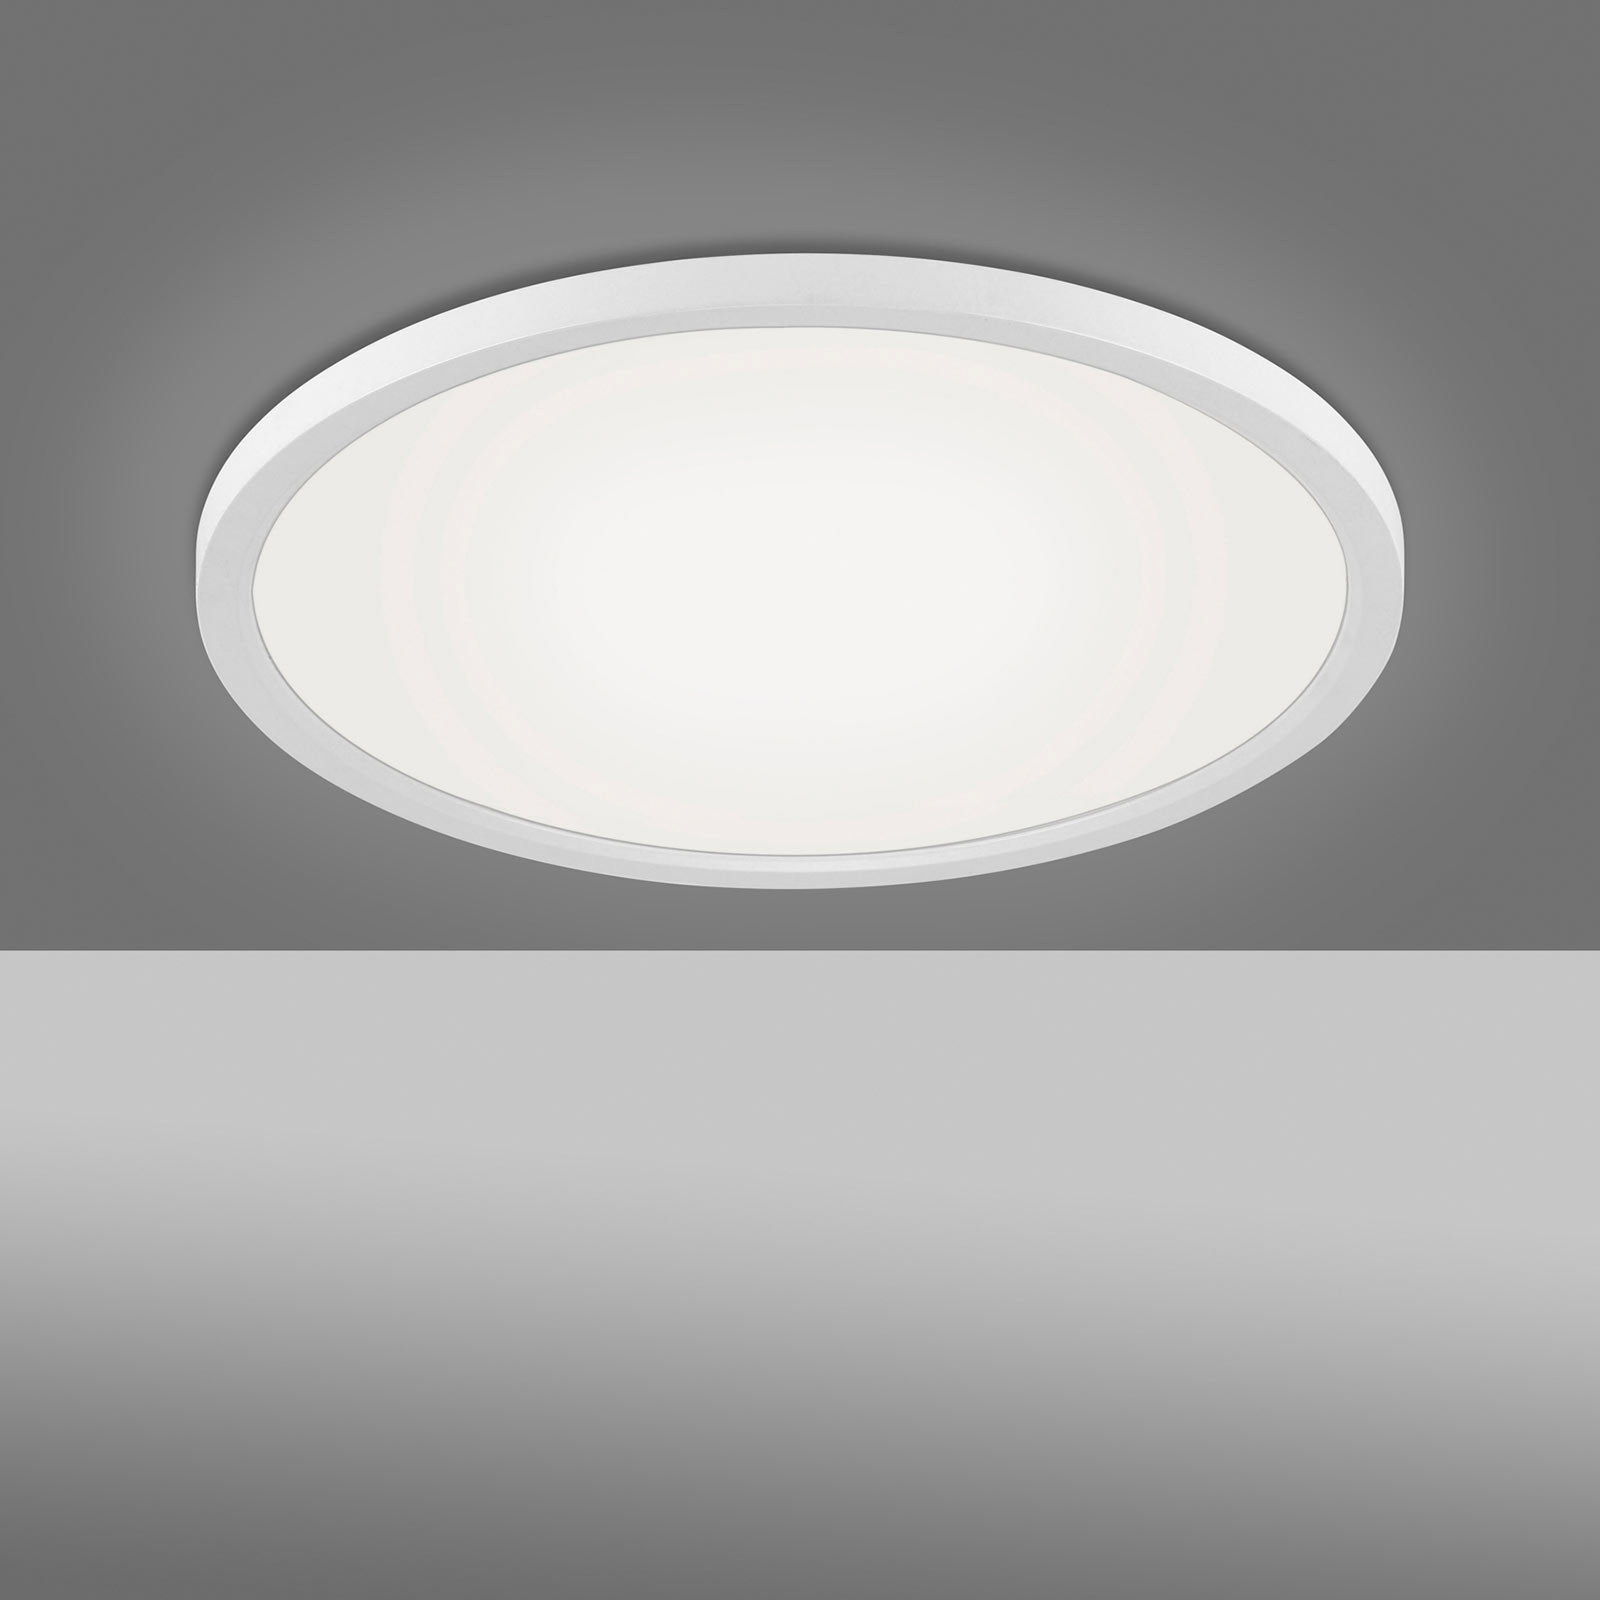 LED-taklampa Flat CCT, Ø 40 cm, vit